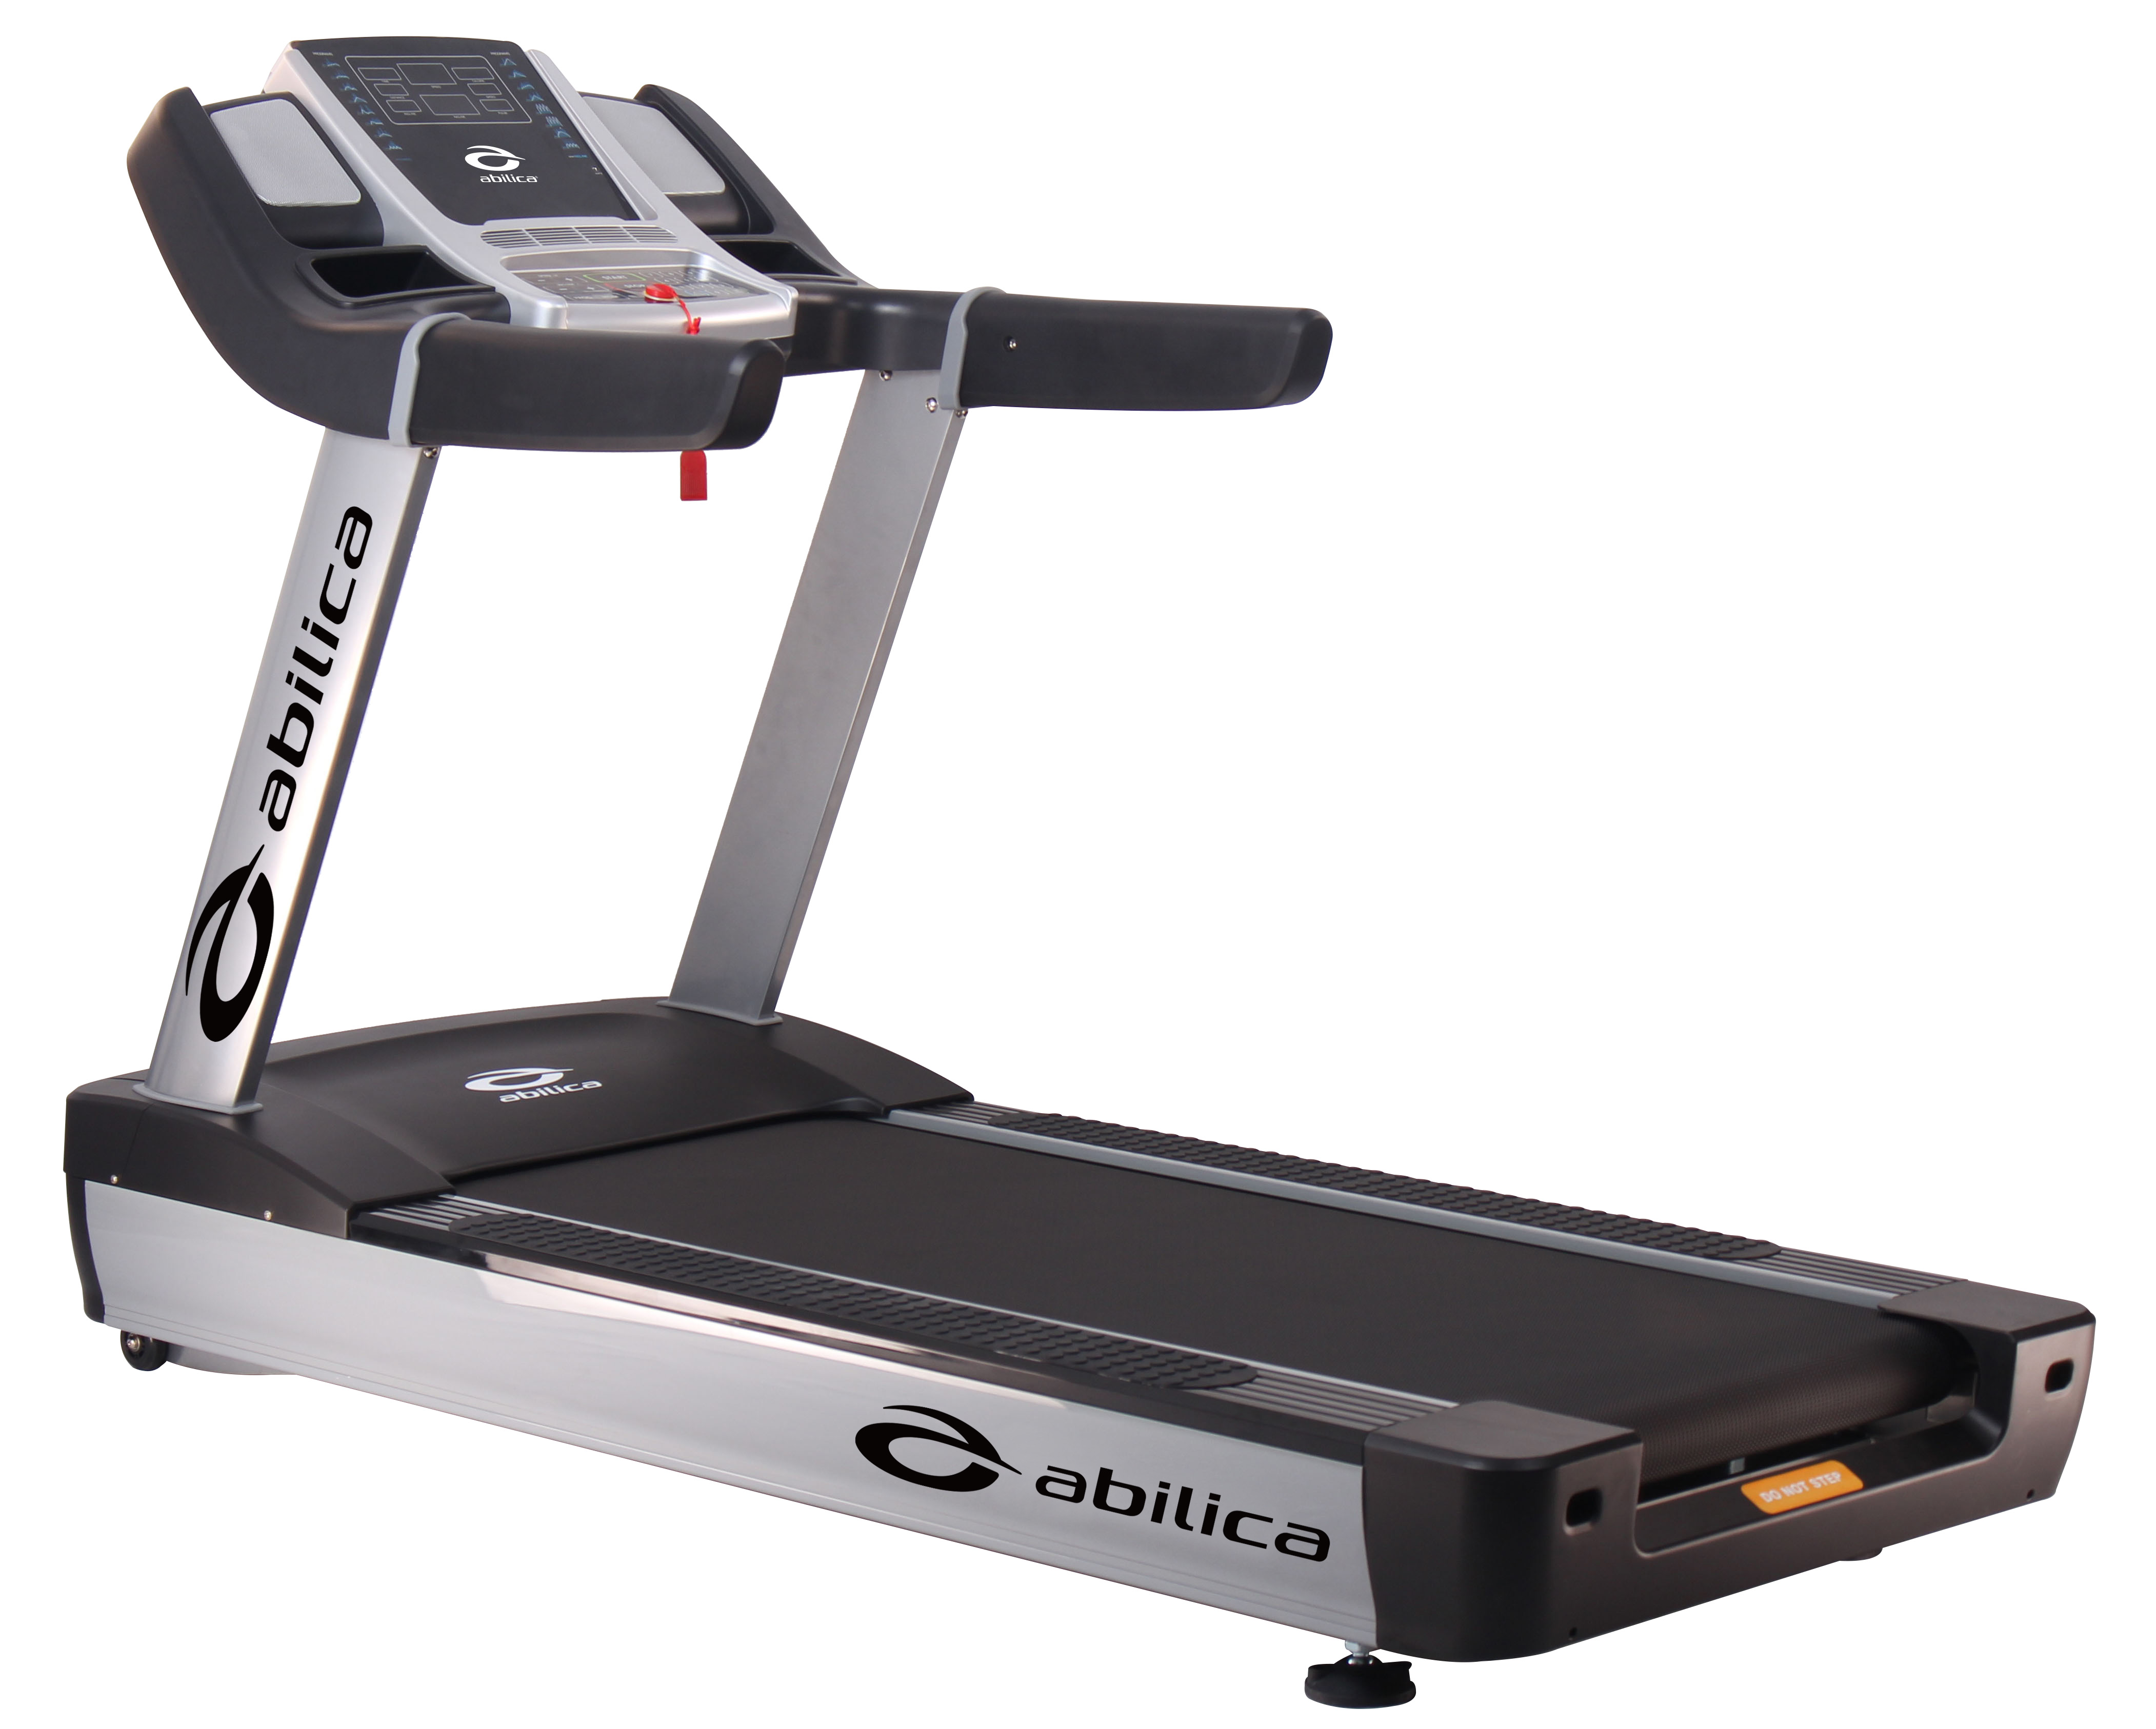 Abilica Premium AC BT Treadmill